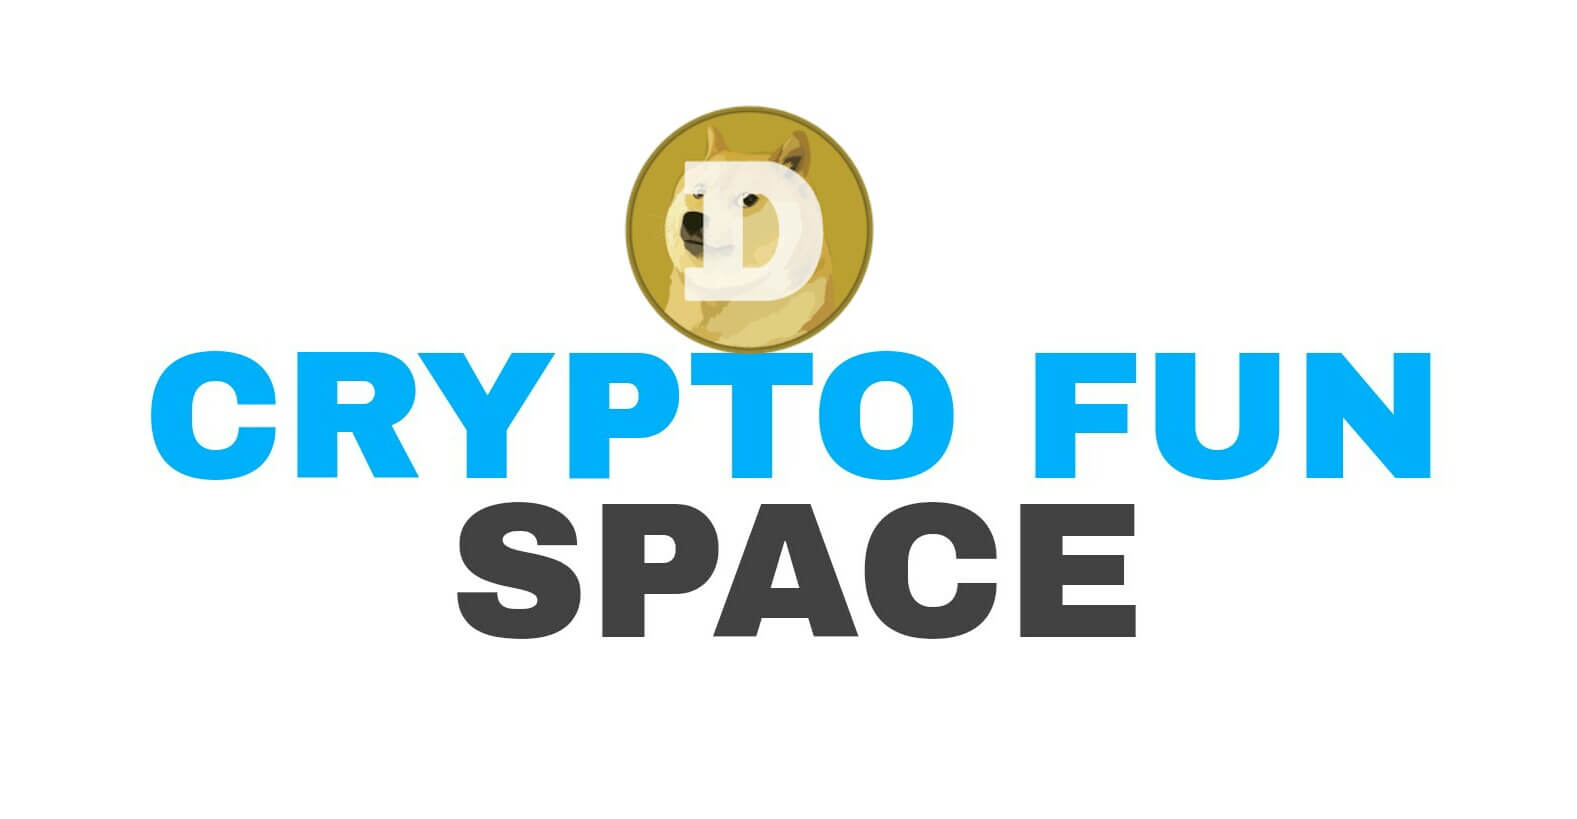 Cara mendapatkan 0.1 Dogecoin setiap 15 menit dari Cryptofun.space